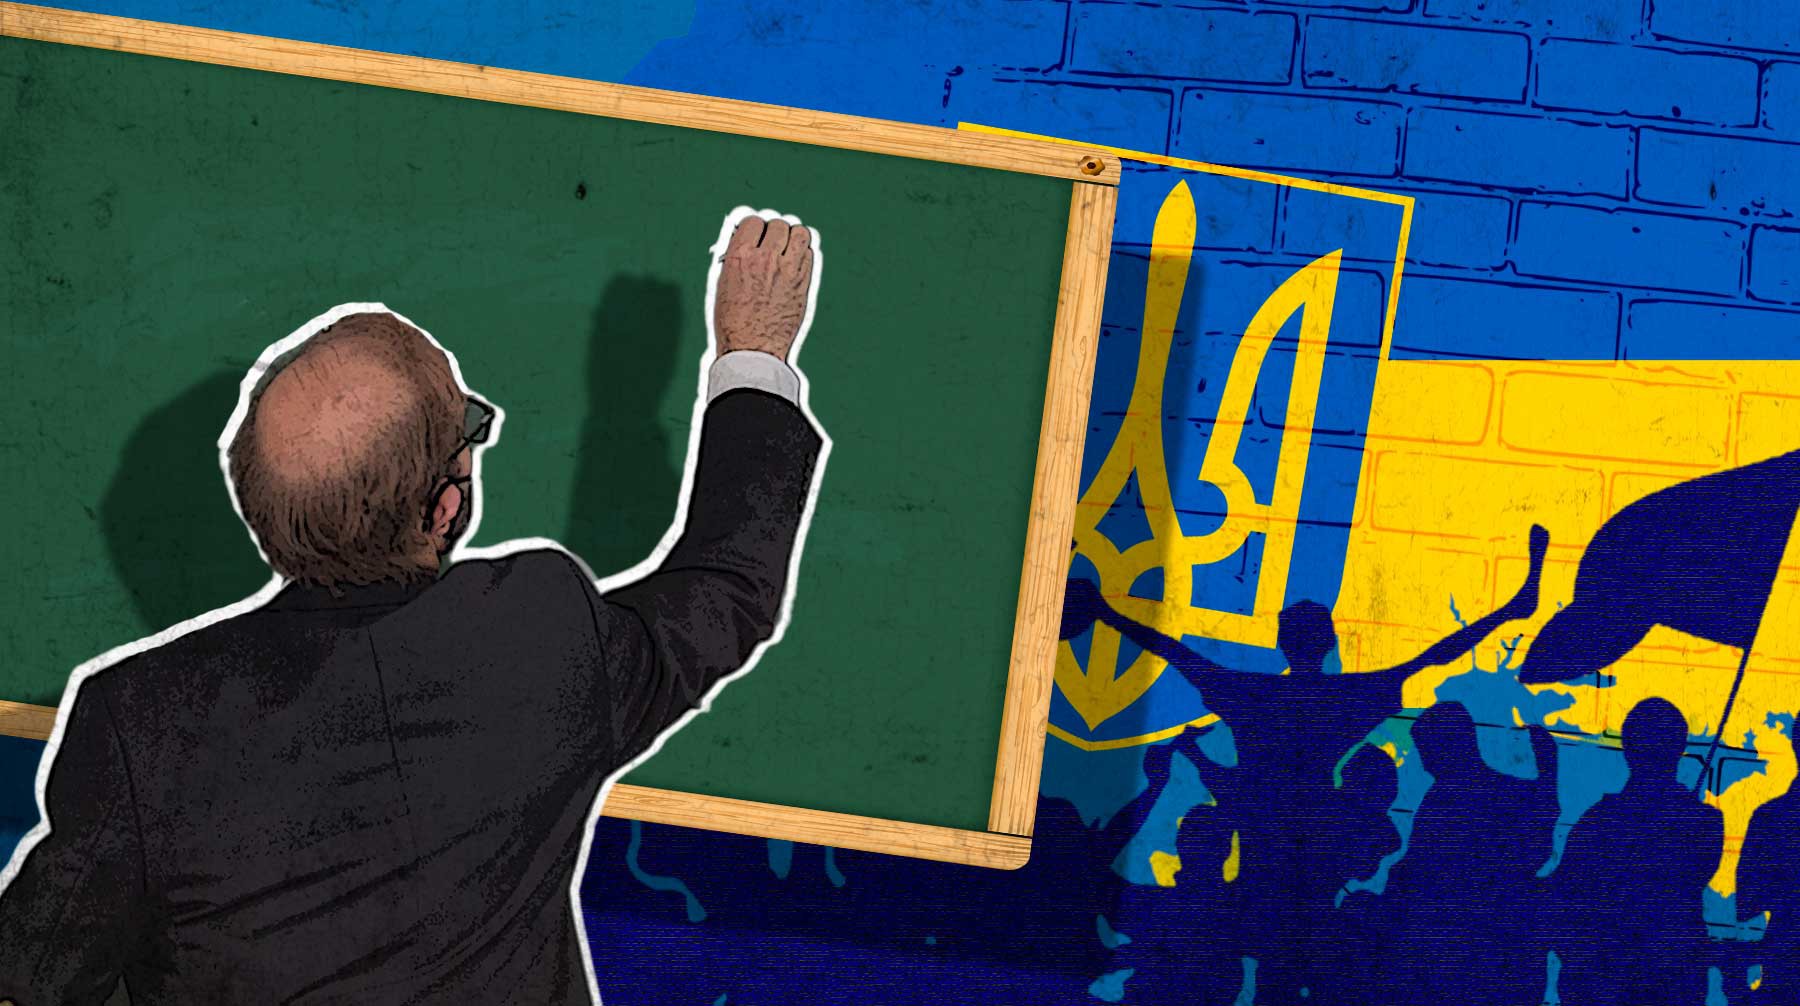 Dailystorm - Через «окно Овертона» — в детский лагерь «Азова»: Госдума представила доклад о нацификации образования на Украине